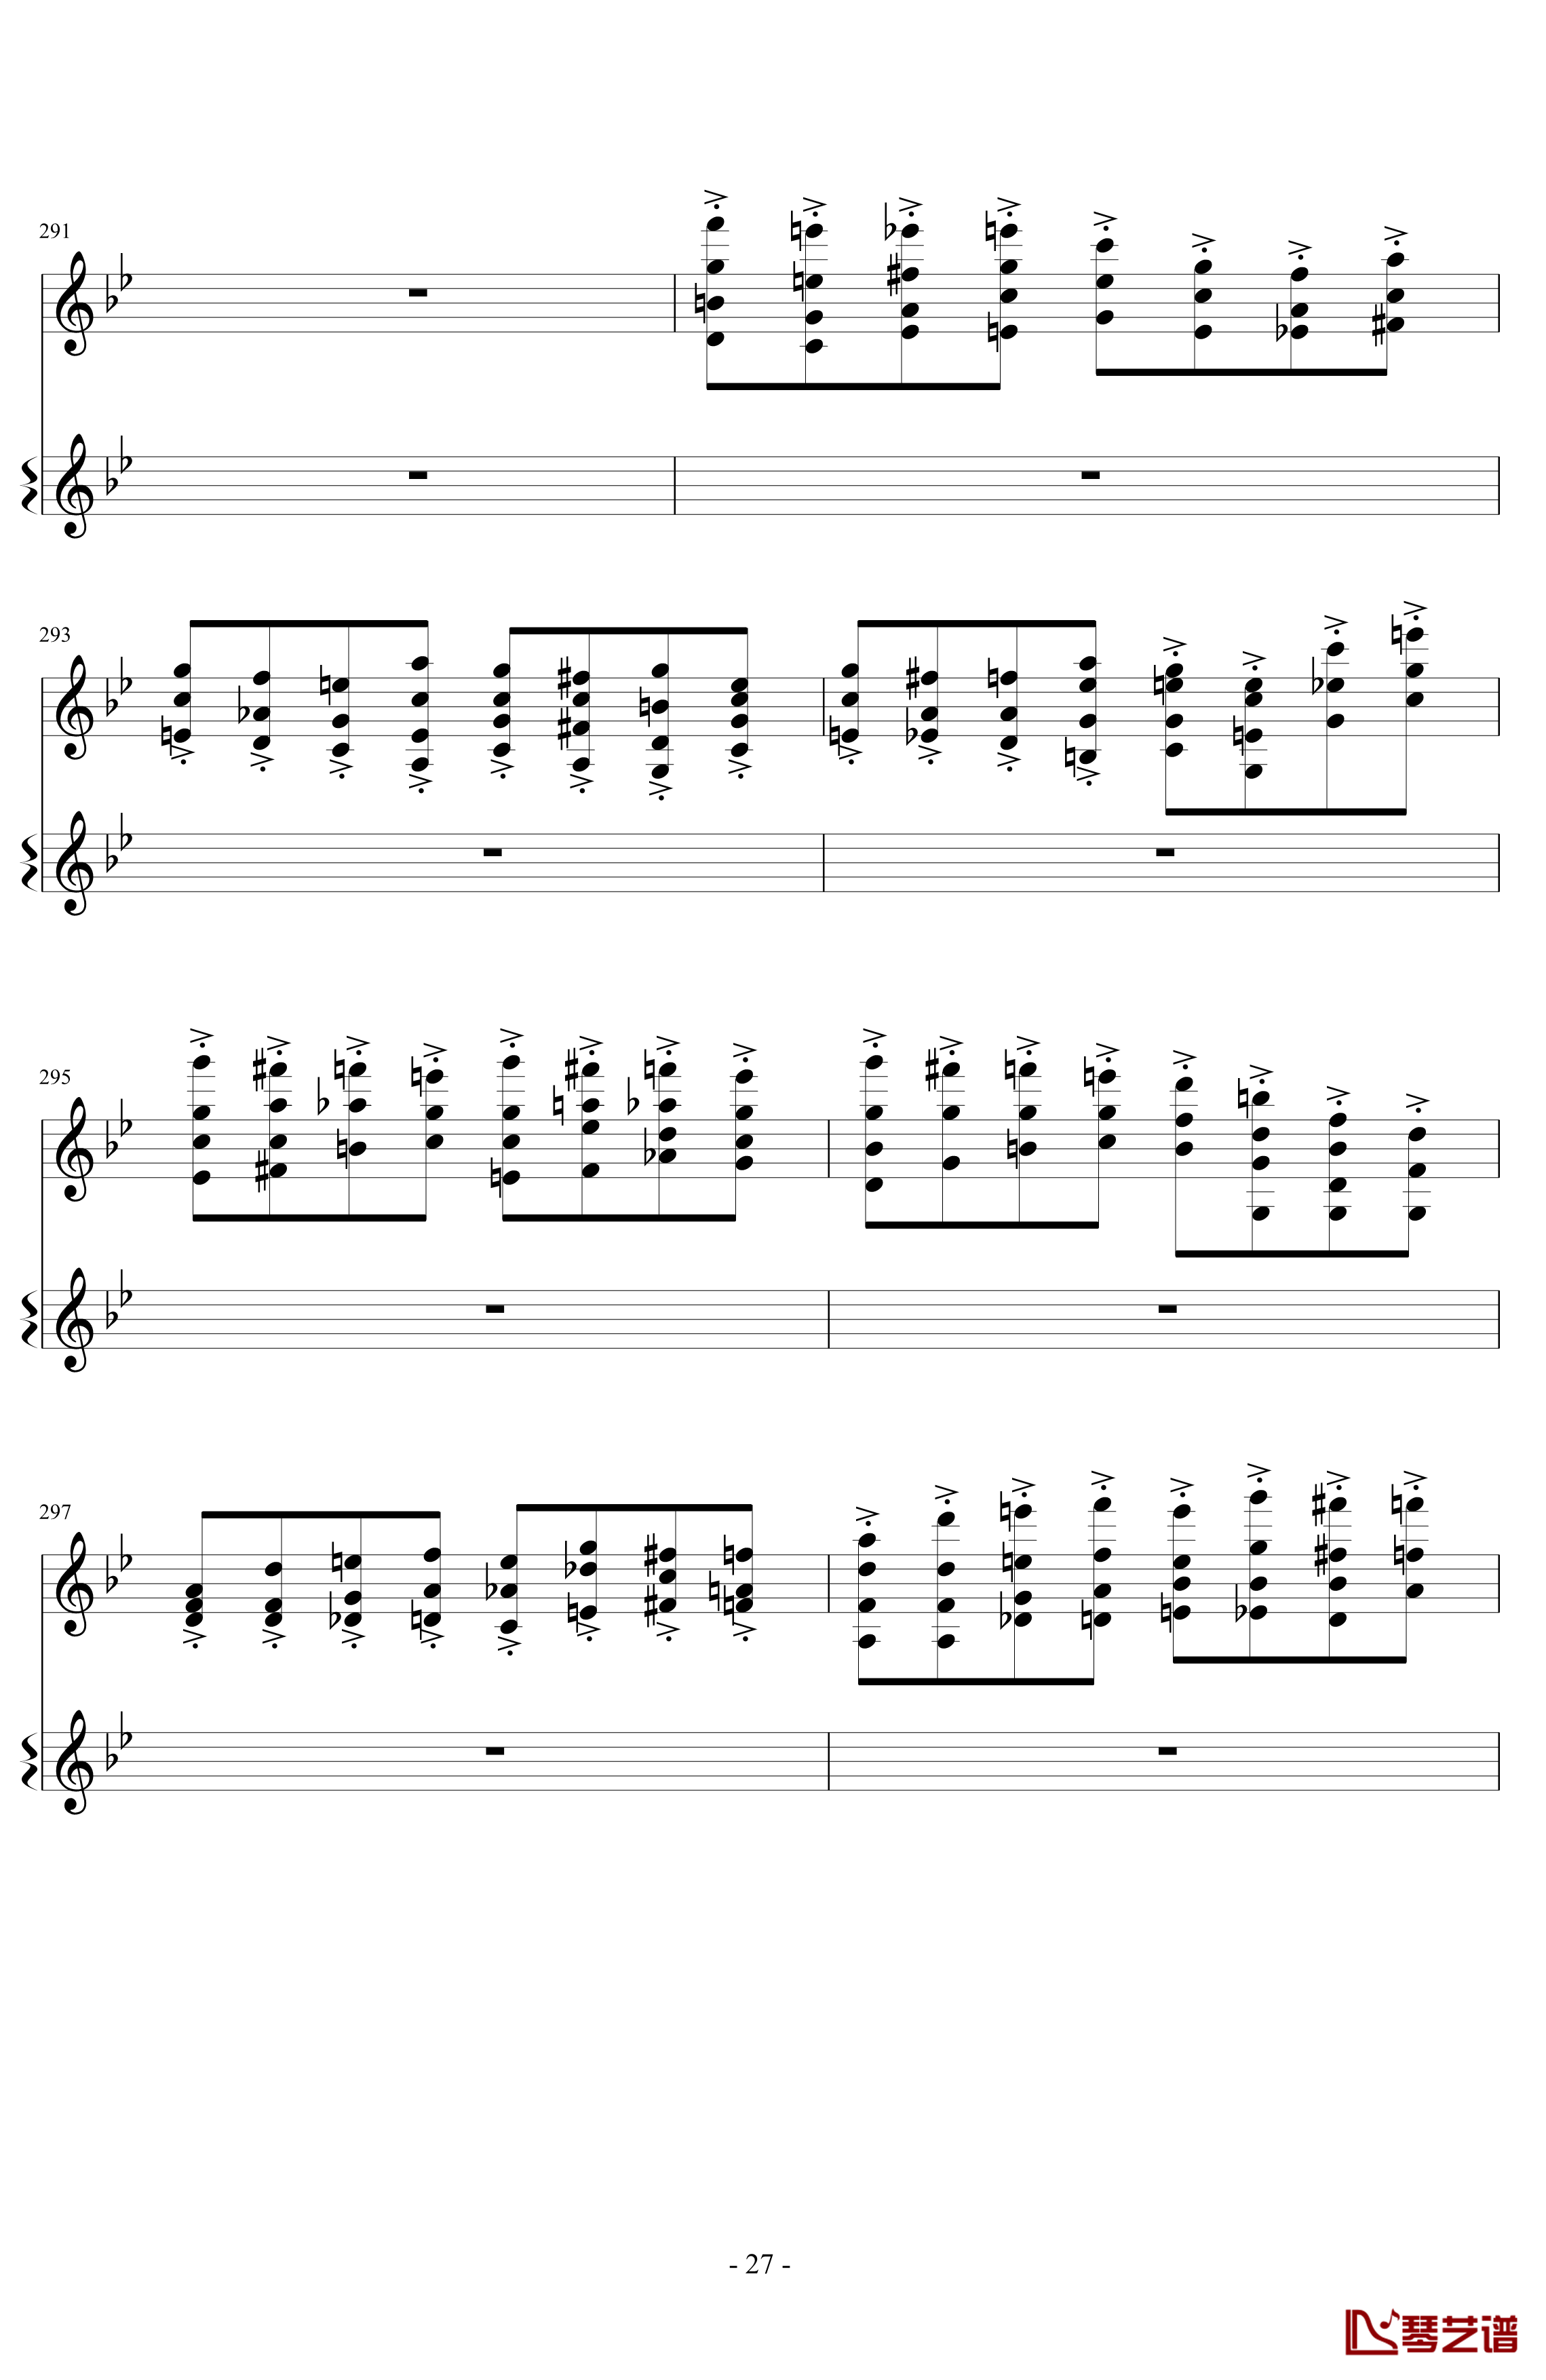 意大利国歌变奏曲钢琴谱-DXF27